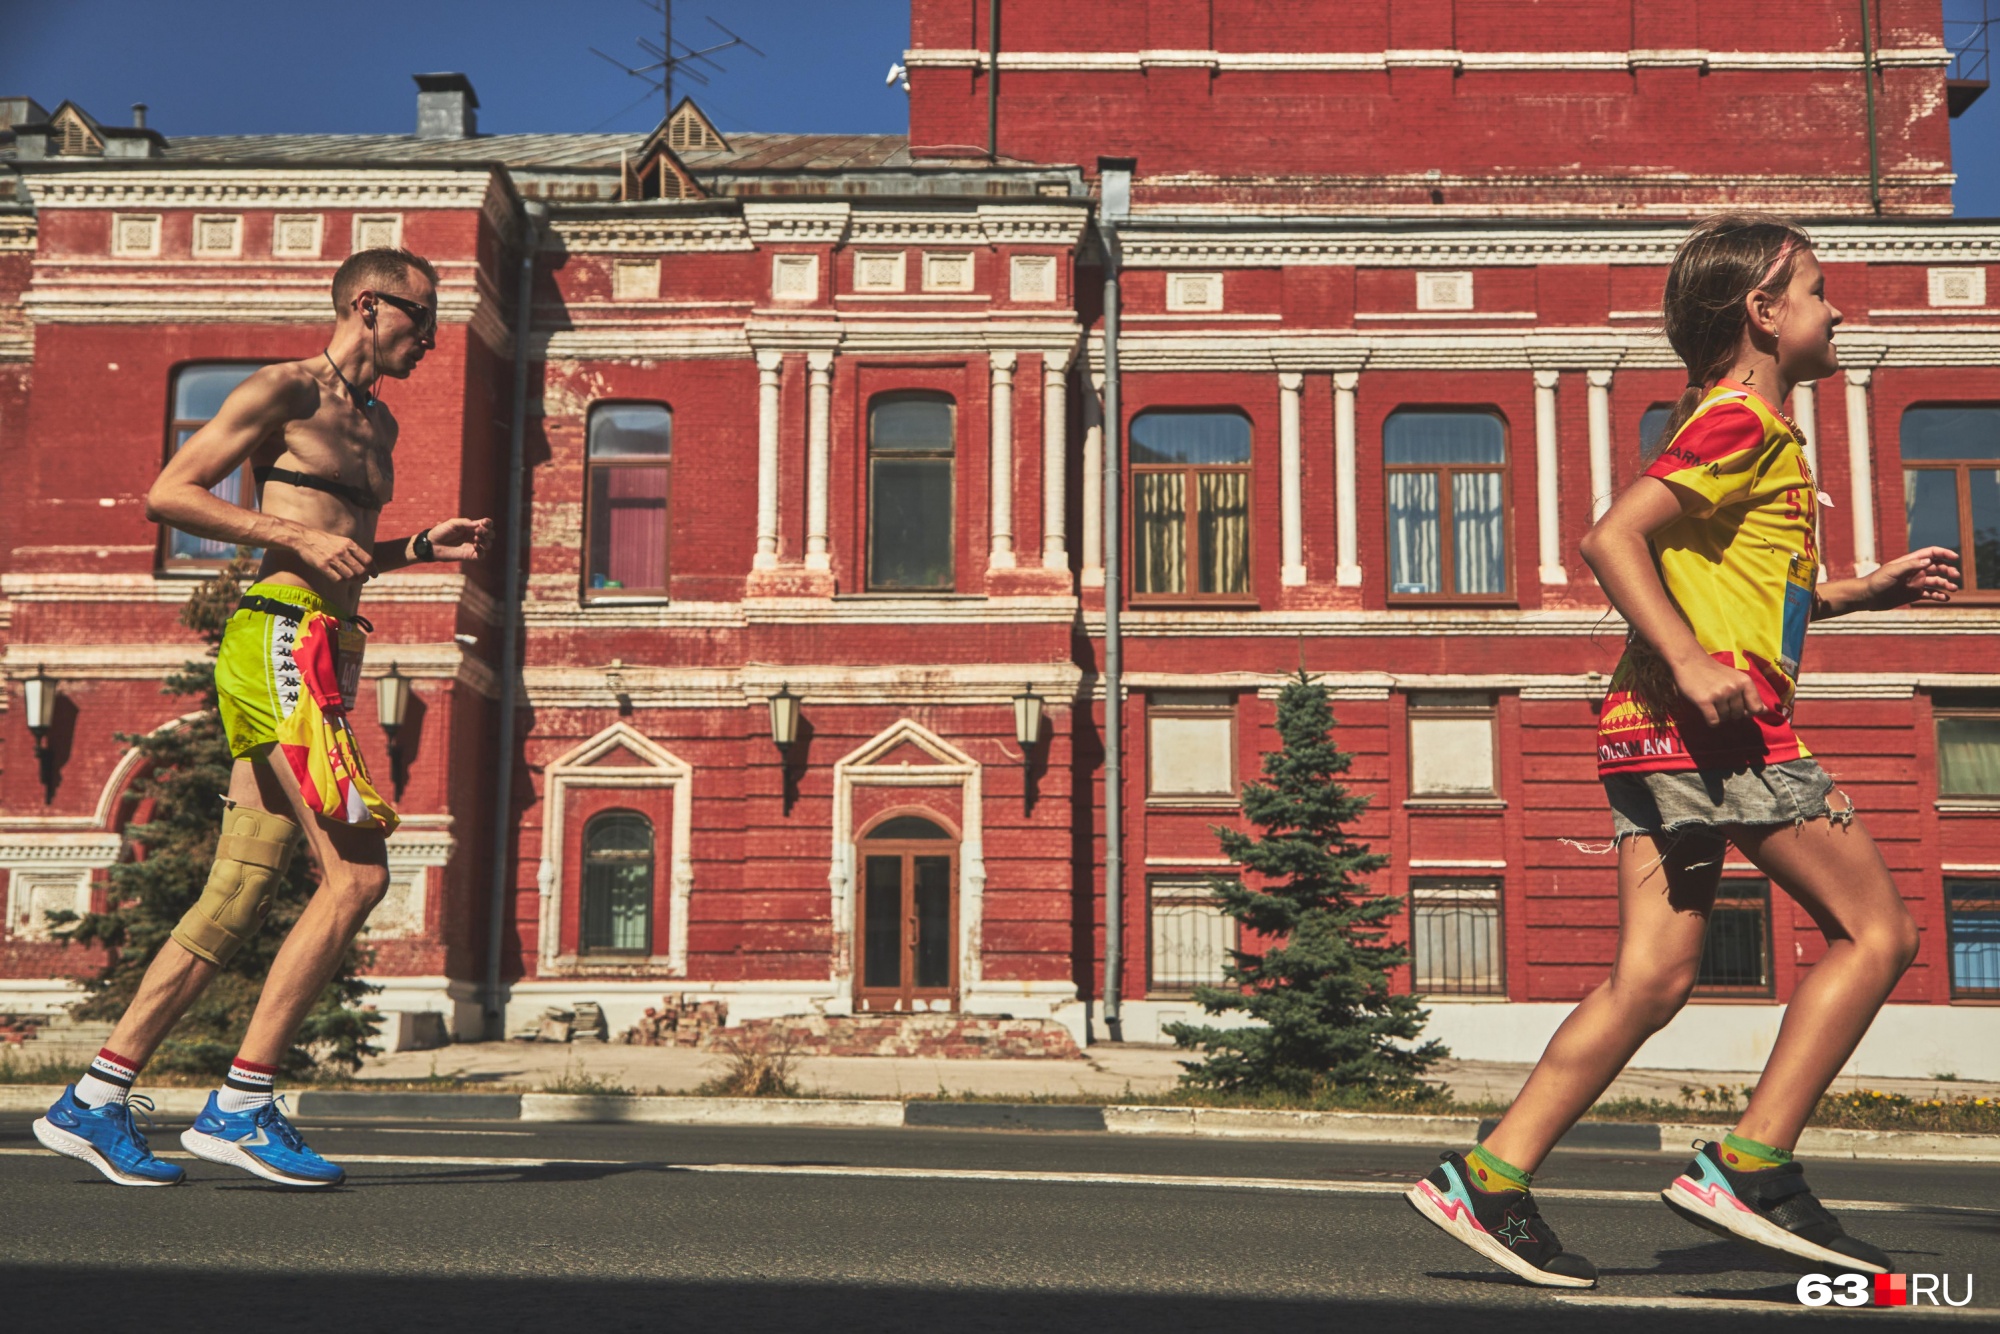 Массовый легкоатлетический забег «Кросс нации» пройдет в Иркутске 17 сентября